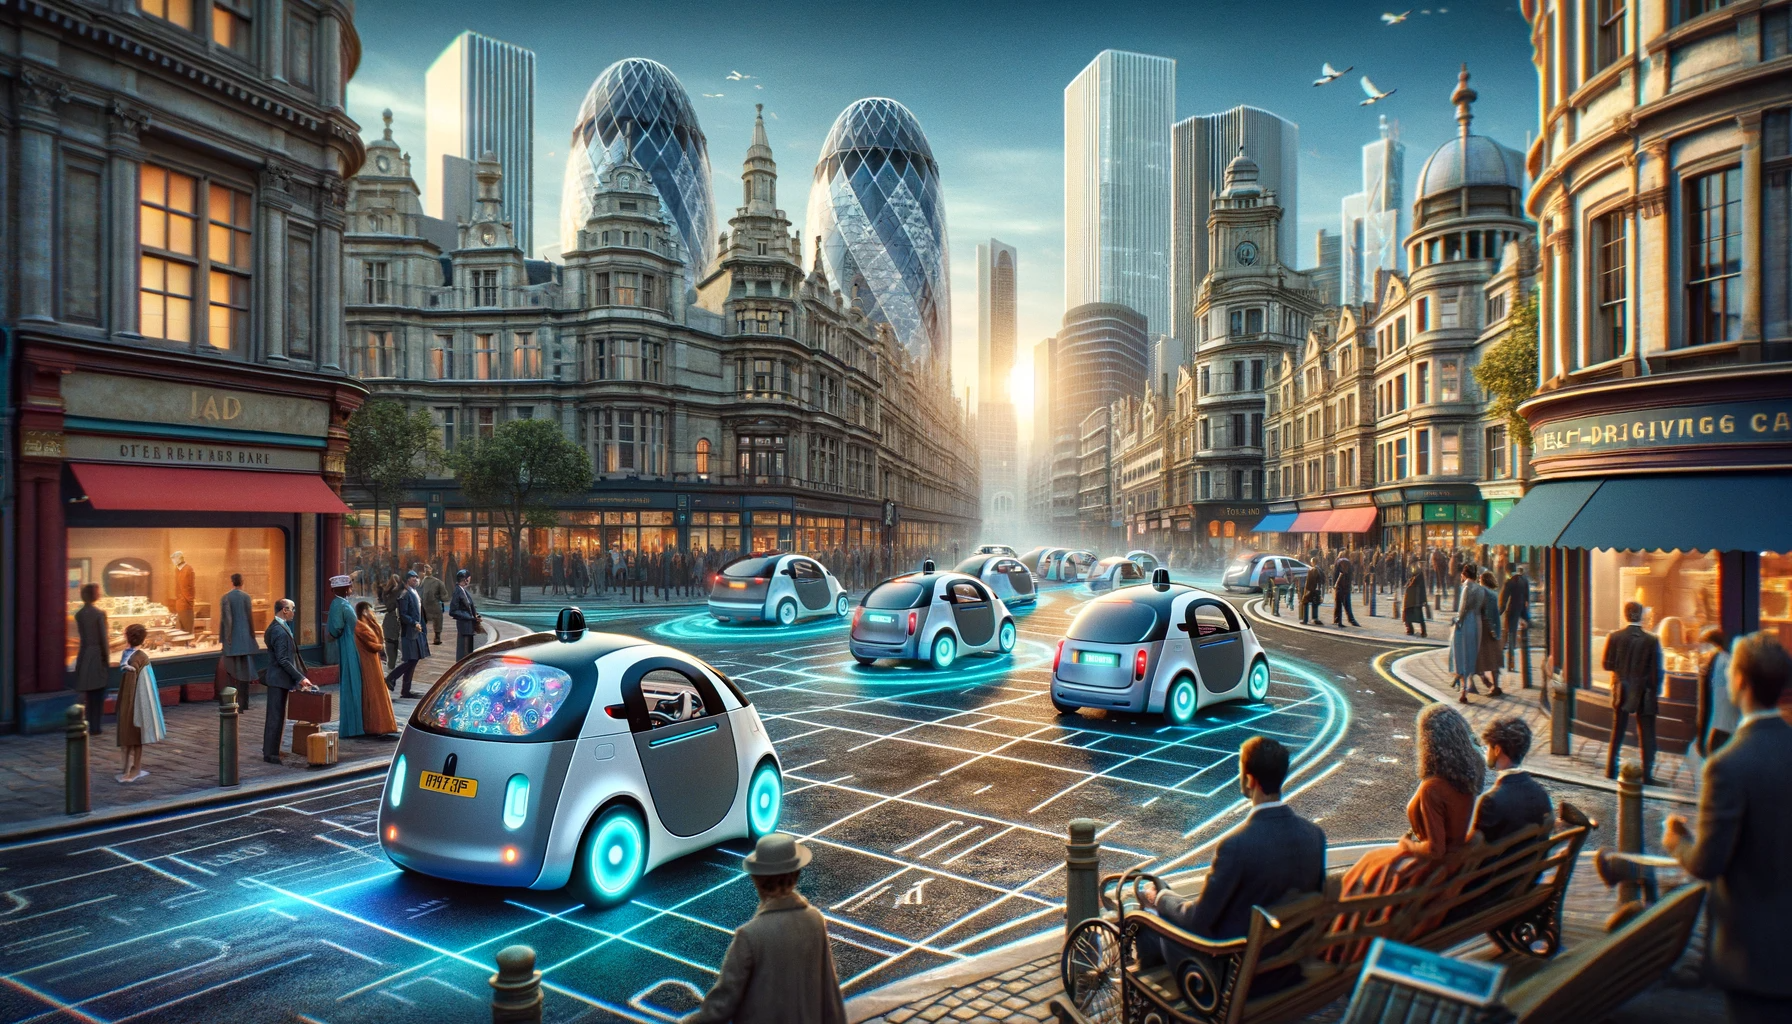 Storbritanniens transportminister Mark Harper meddelade nyligen att självkörande bilar kan börja användas på vissa brittiska vägar så tidigt som 2026.